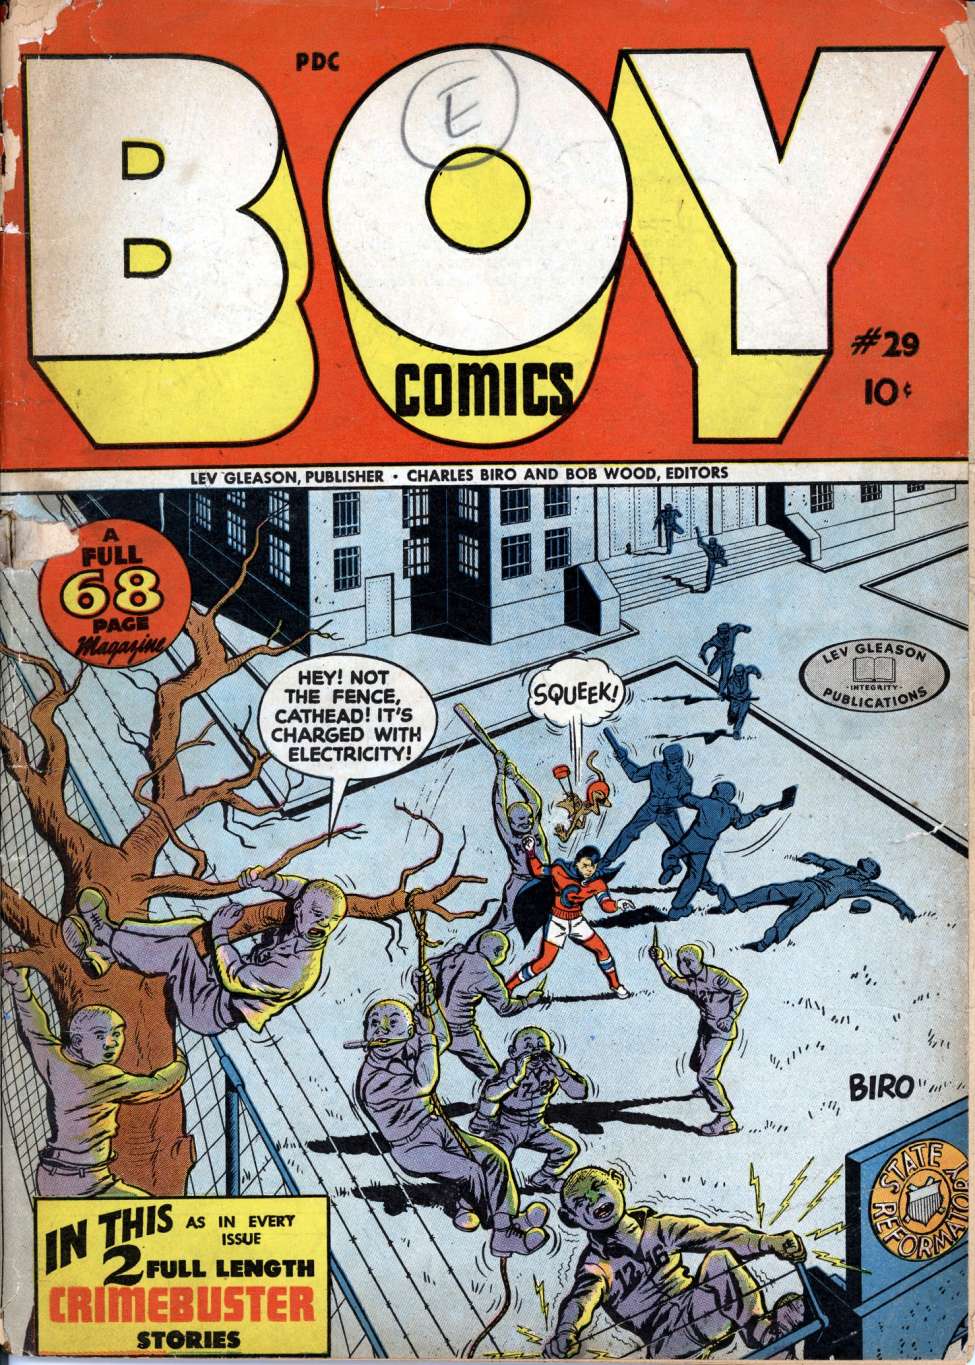 Comic Book Cover For Boy Comics 29 (paper/4fiche)